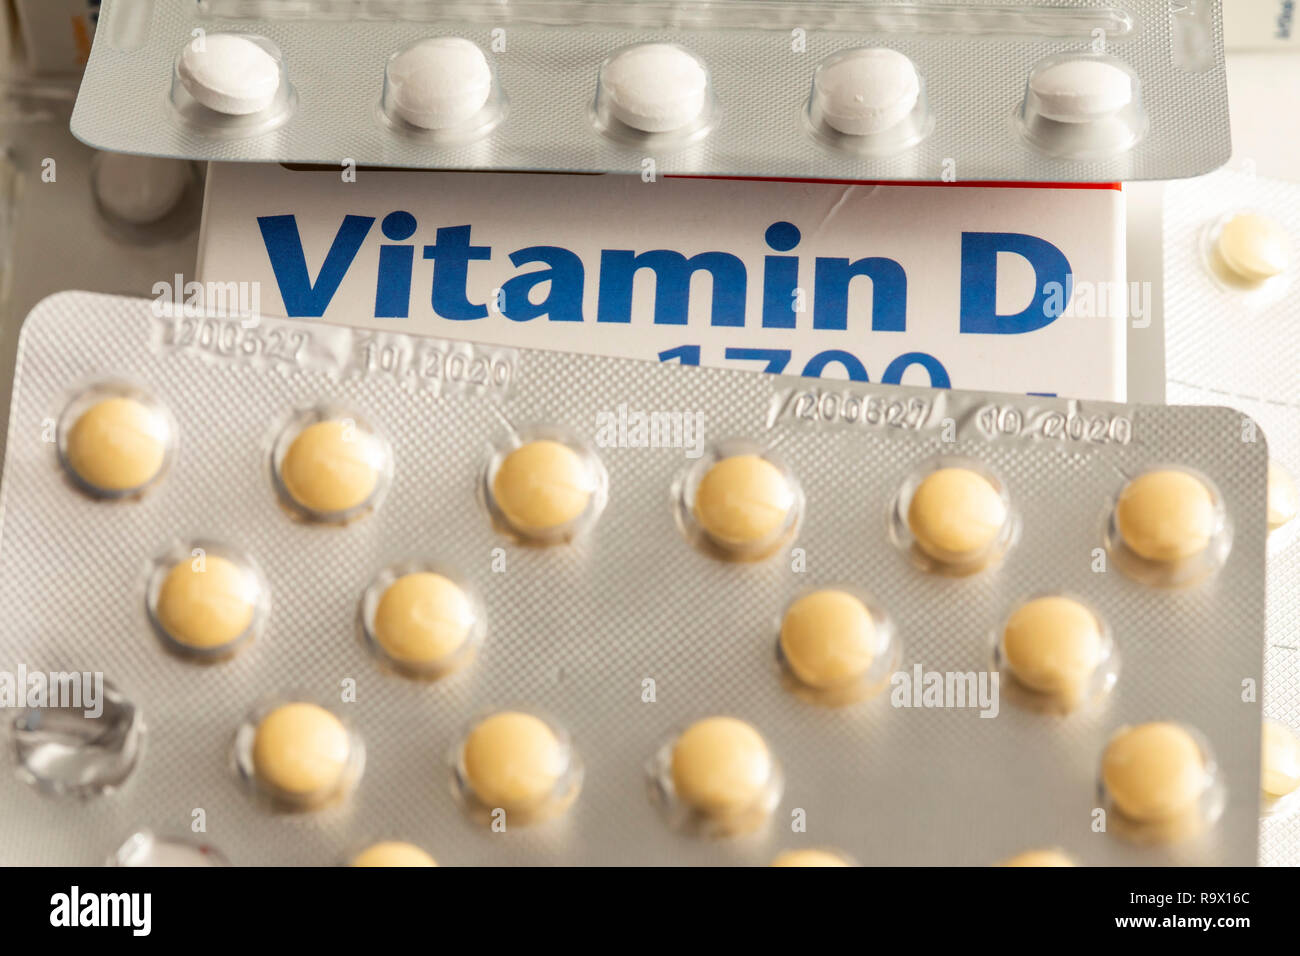 Vitamin D Tabletten Packungen, das Präparat soll den Vitamin D Mangel, durch geringer Sonneneinstrahlung, zum Beispiel im Winter, ergänzen, Stock Photo